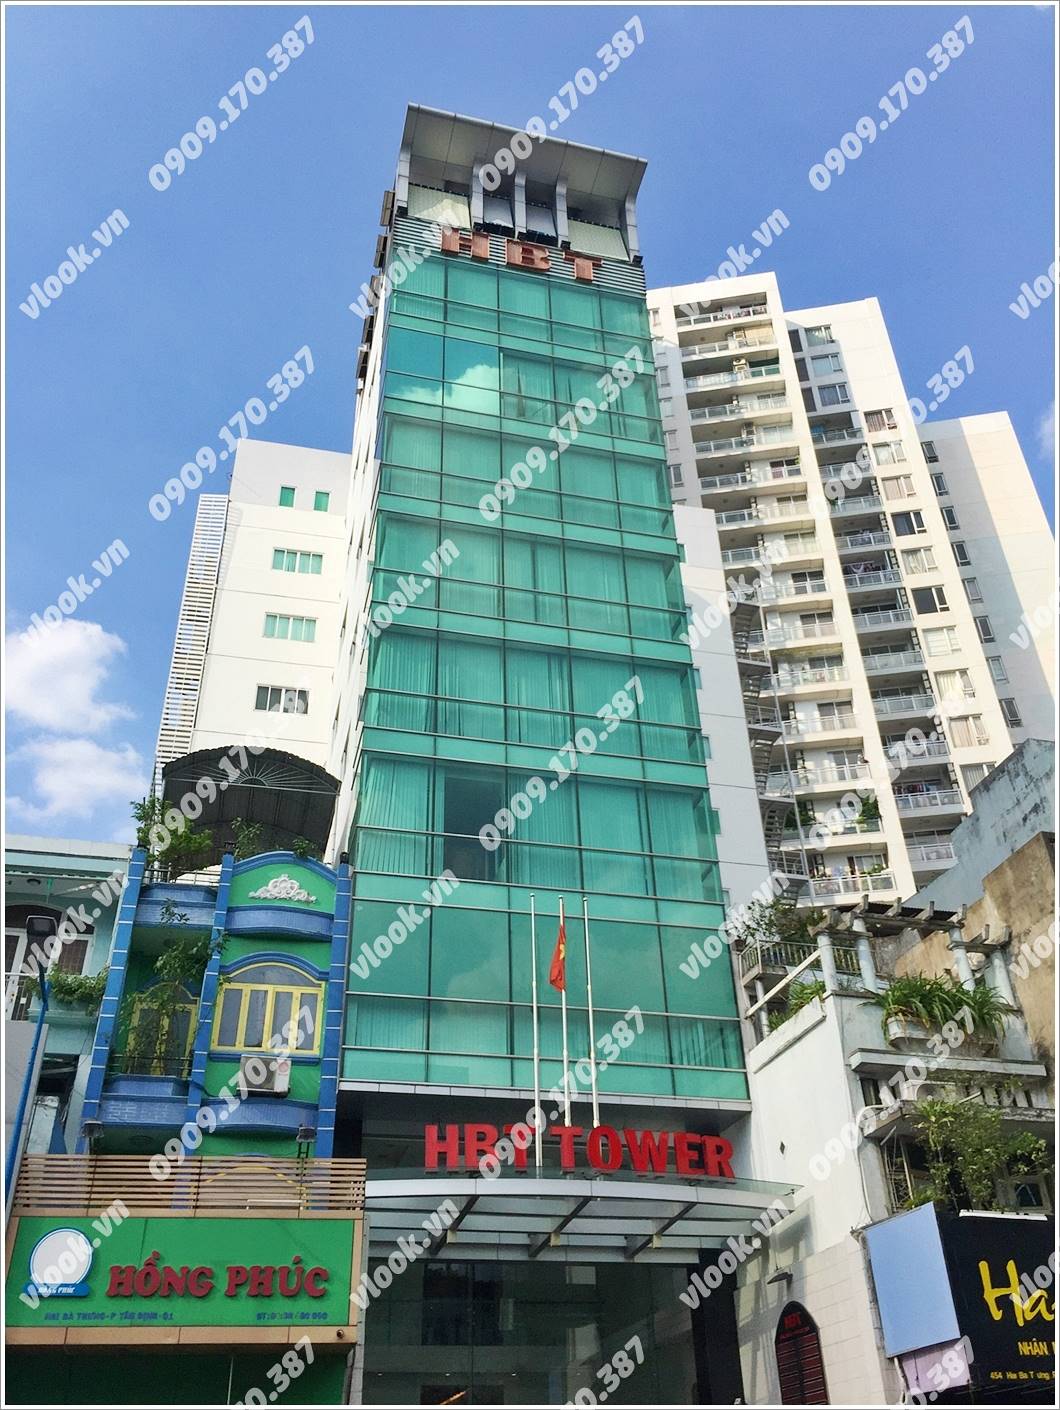 Cao ốc văn phòng cho thuê HBT Tower Hai Bà Trưng Quận 1 TPHCM - vlook.vn